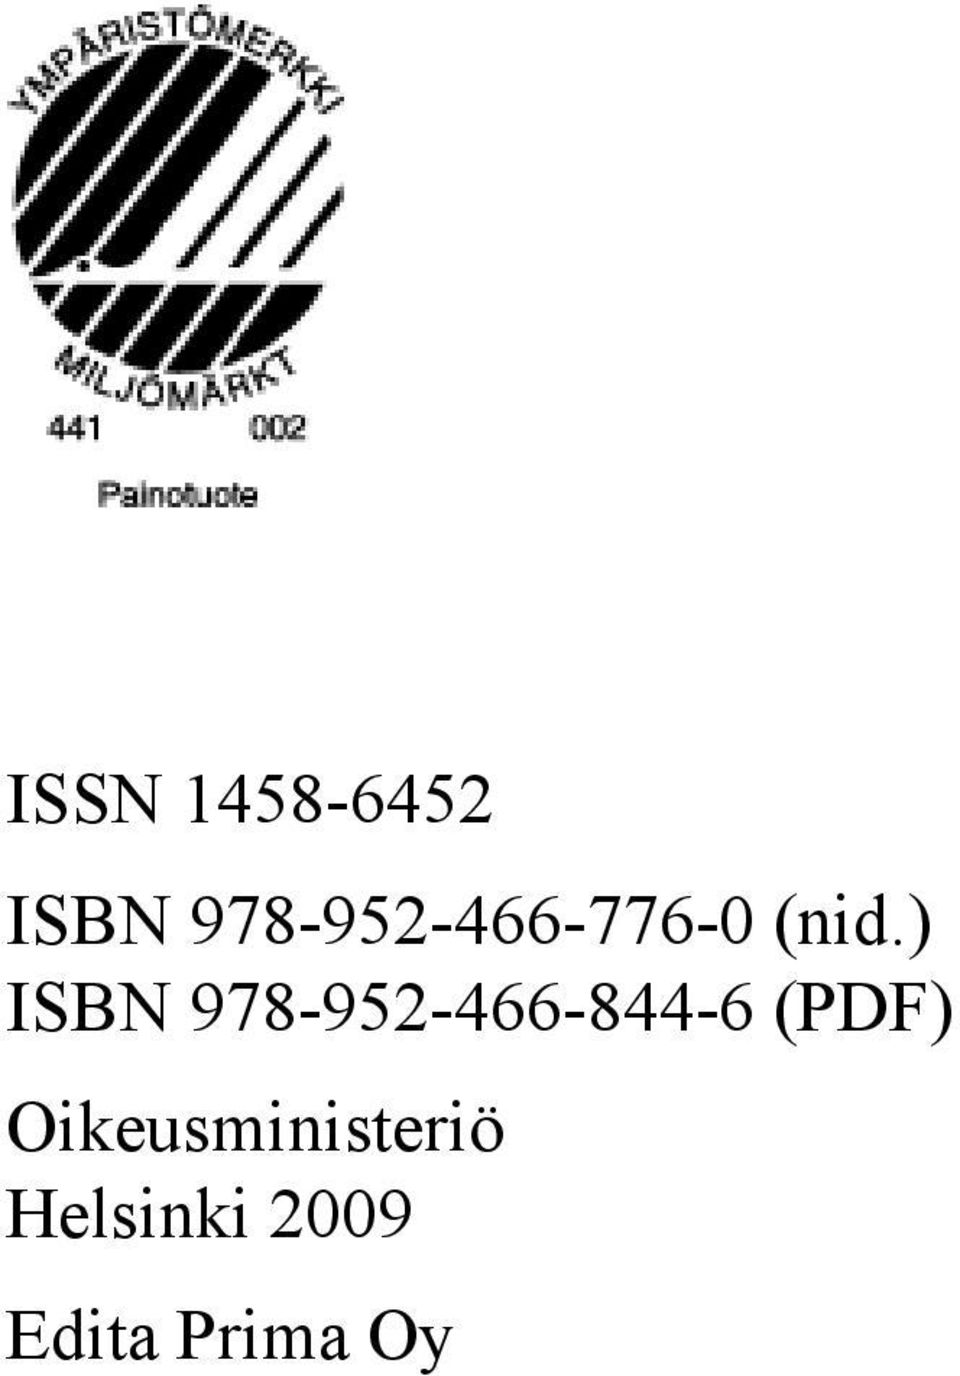 ) ISBN 978-952-466-844-6